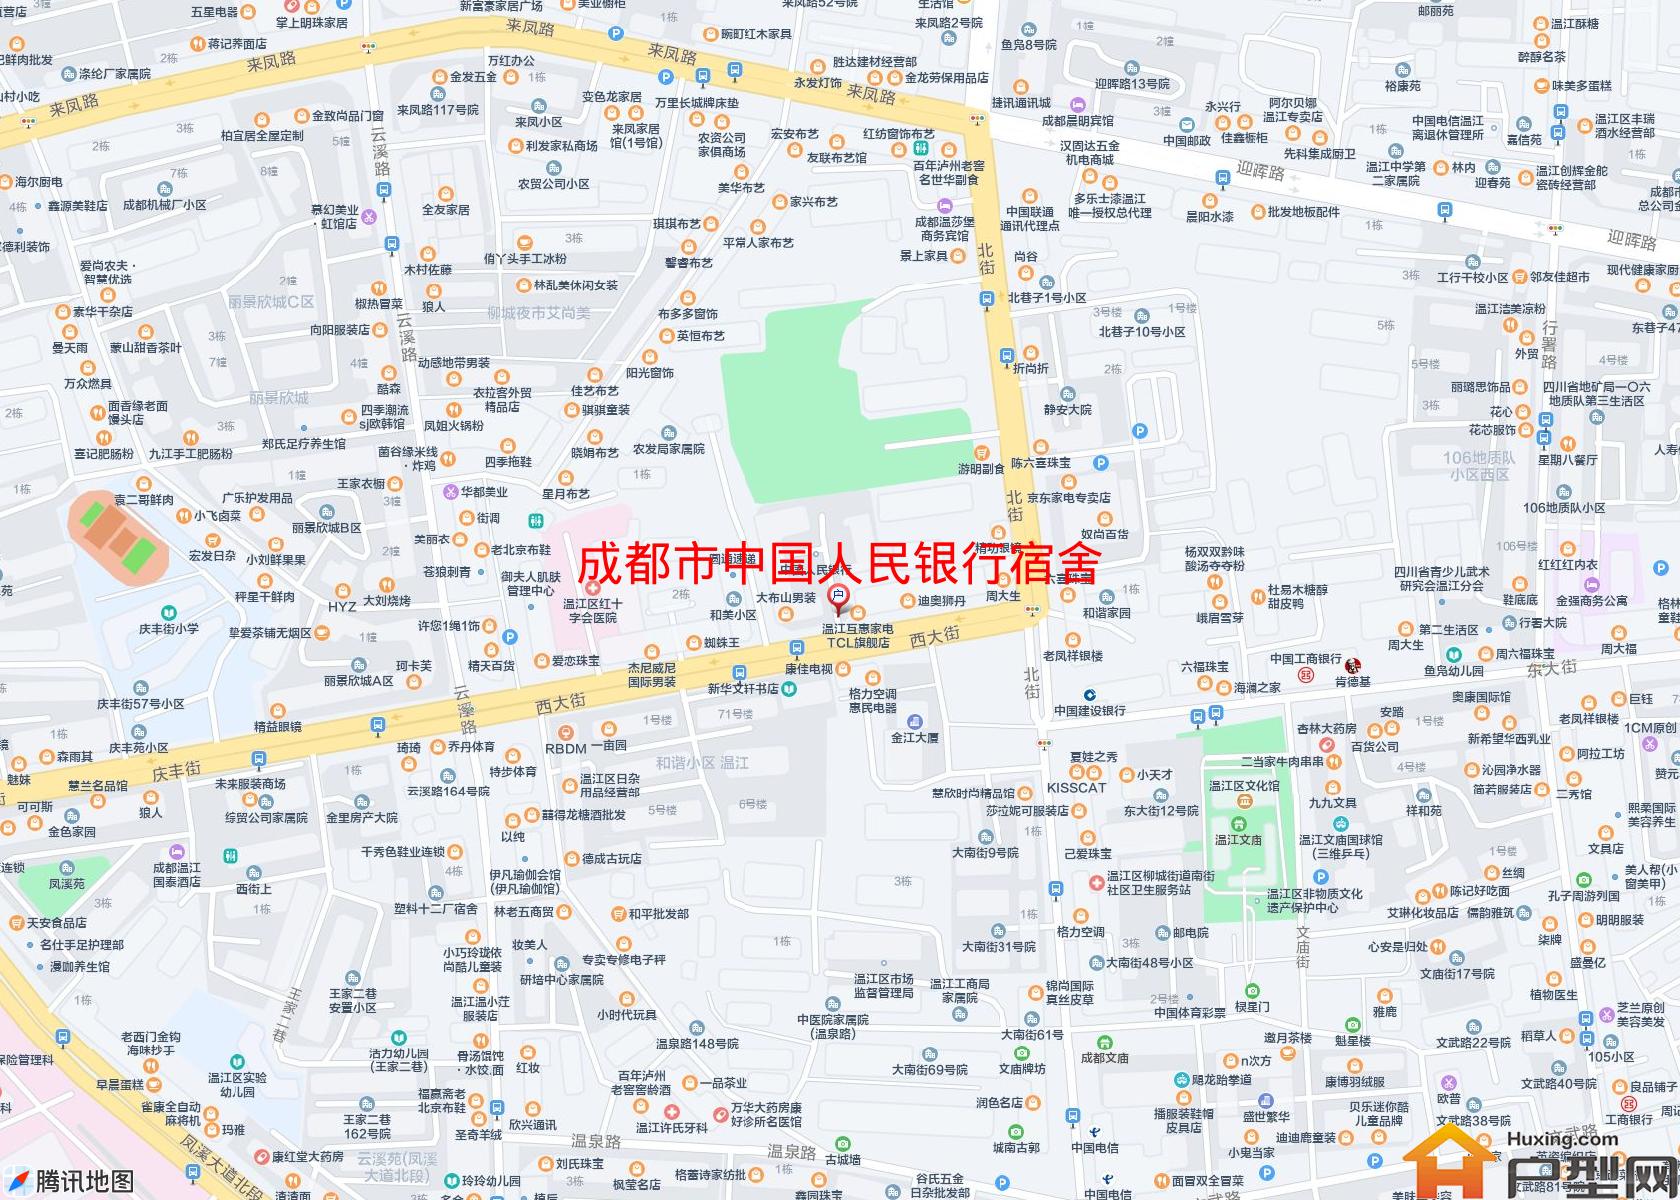 中国人民银行宿舍小区 - 户型网